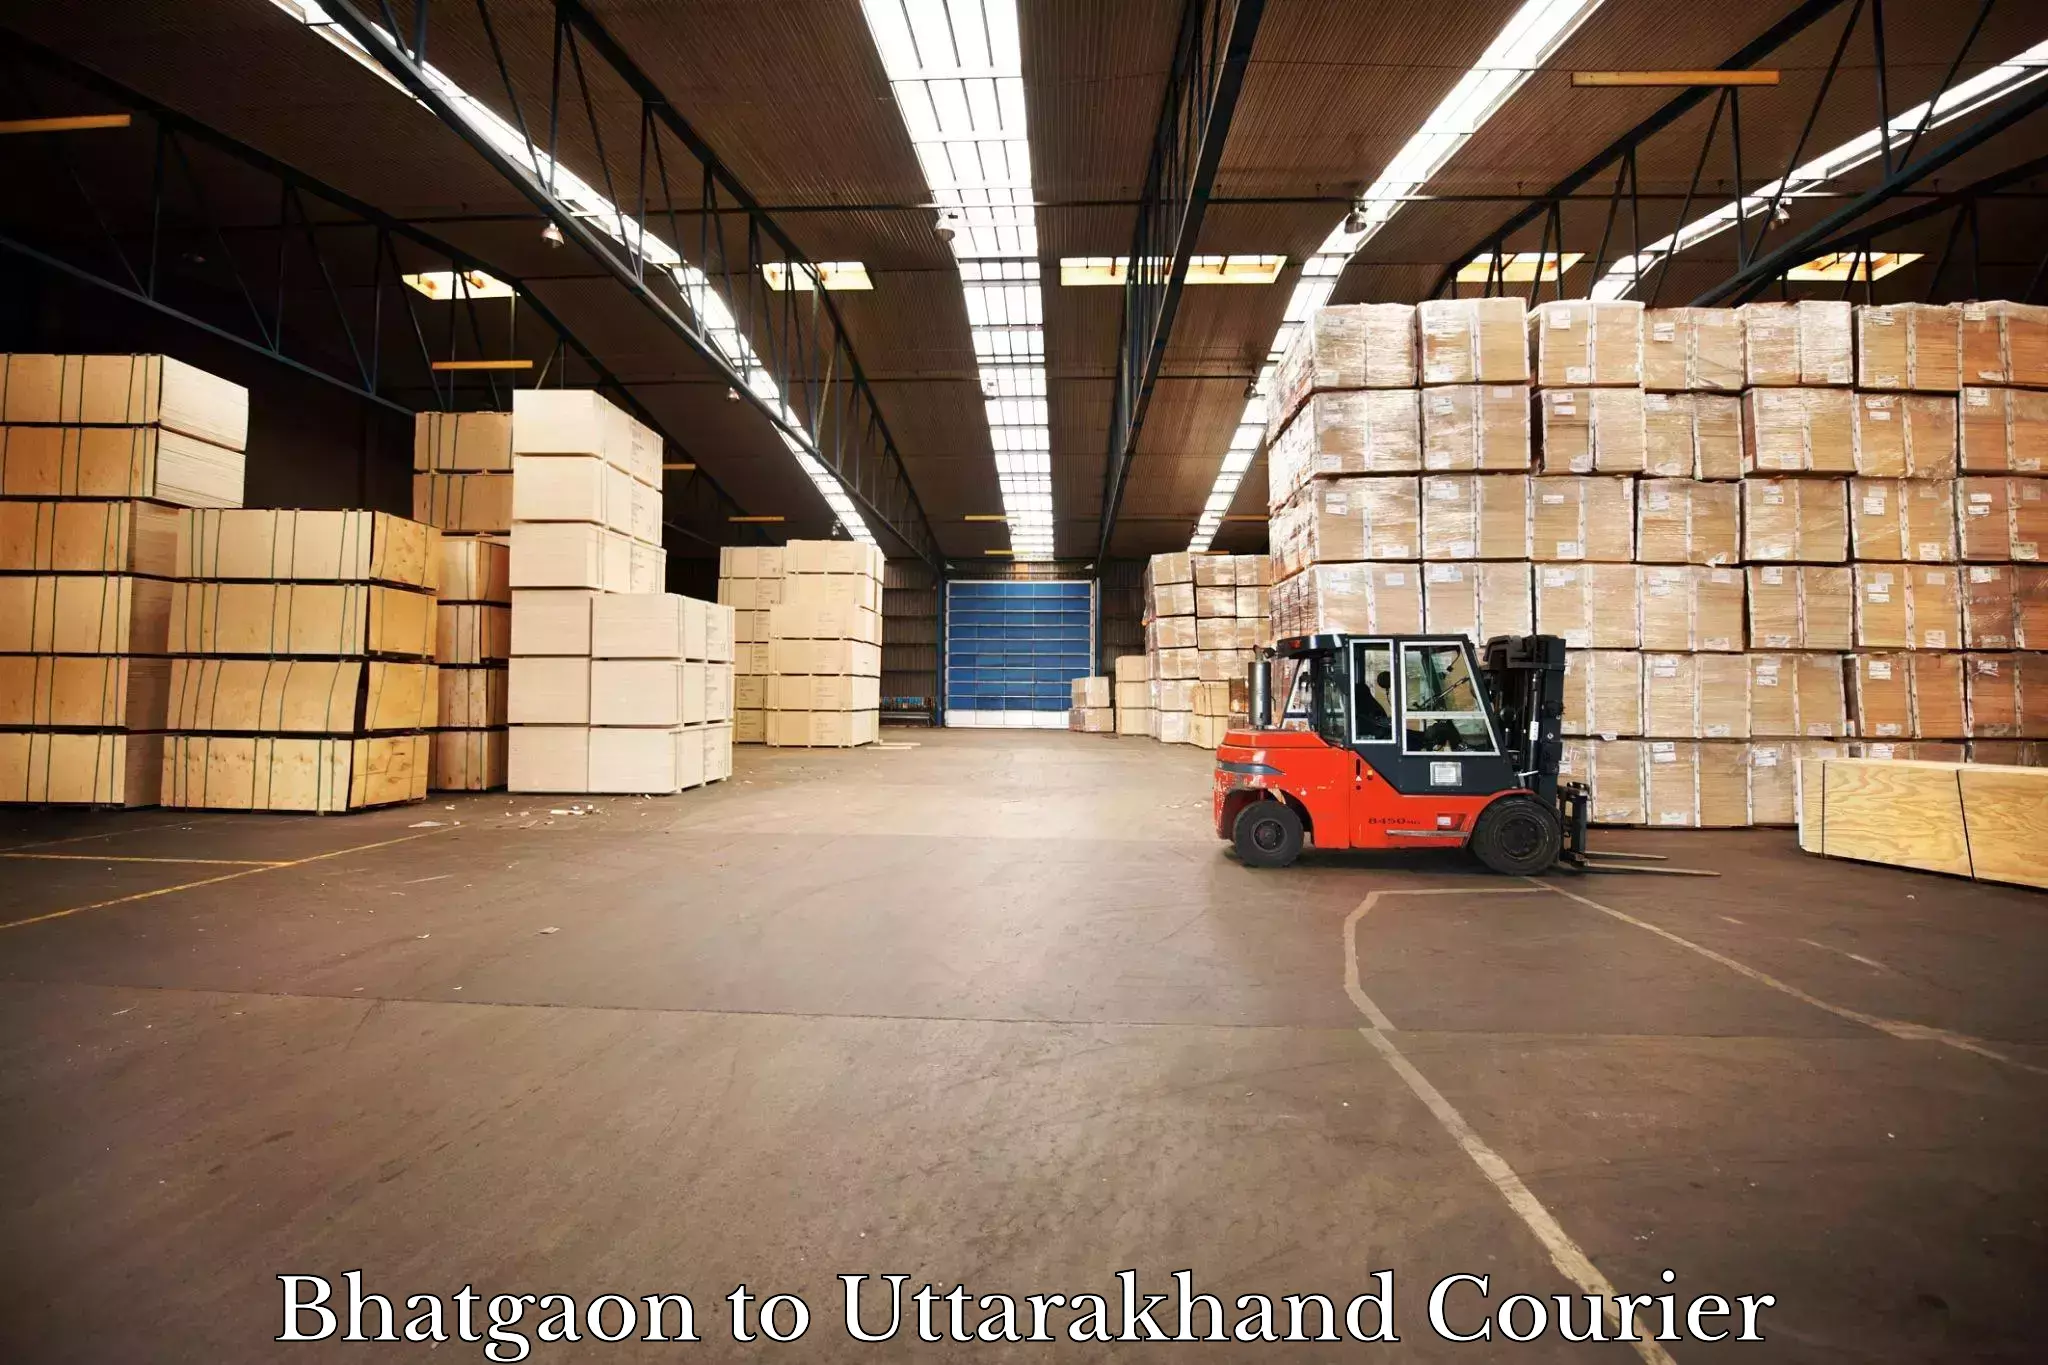 Shipping and handling Bhatgaon to Uttarakhand